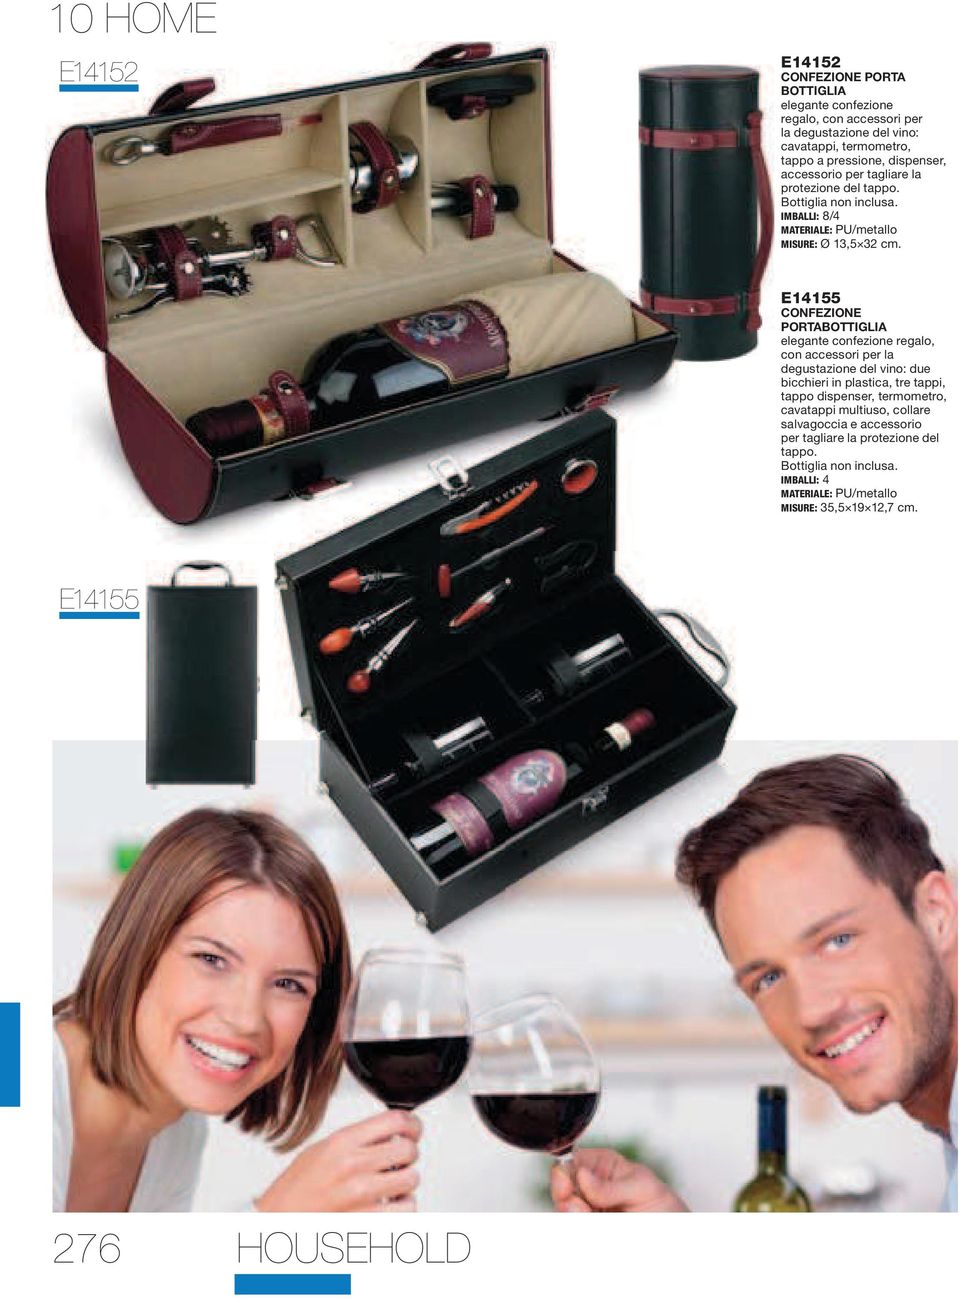 E14155 CONFEZIONE PORTABOTTIGLIA elegante confezione regalo, con accessori per la degustazione del vino: due bicchieri in plastica, tre tappi, tappo dispenser,